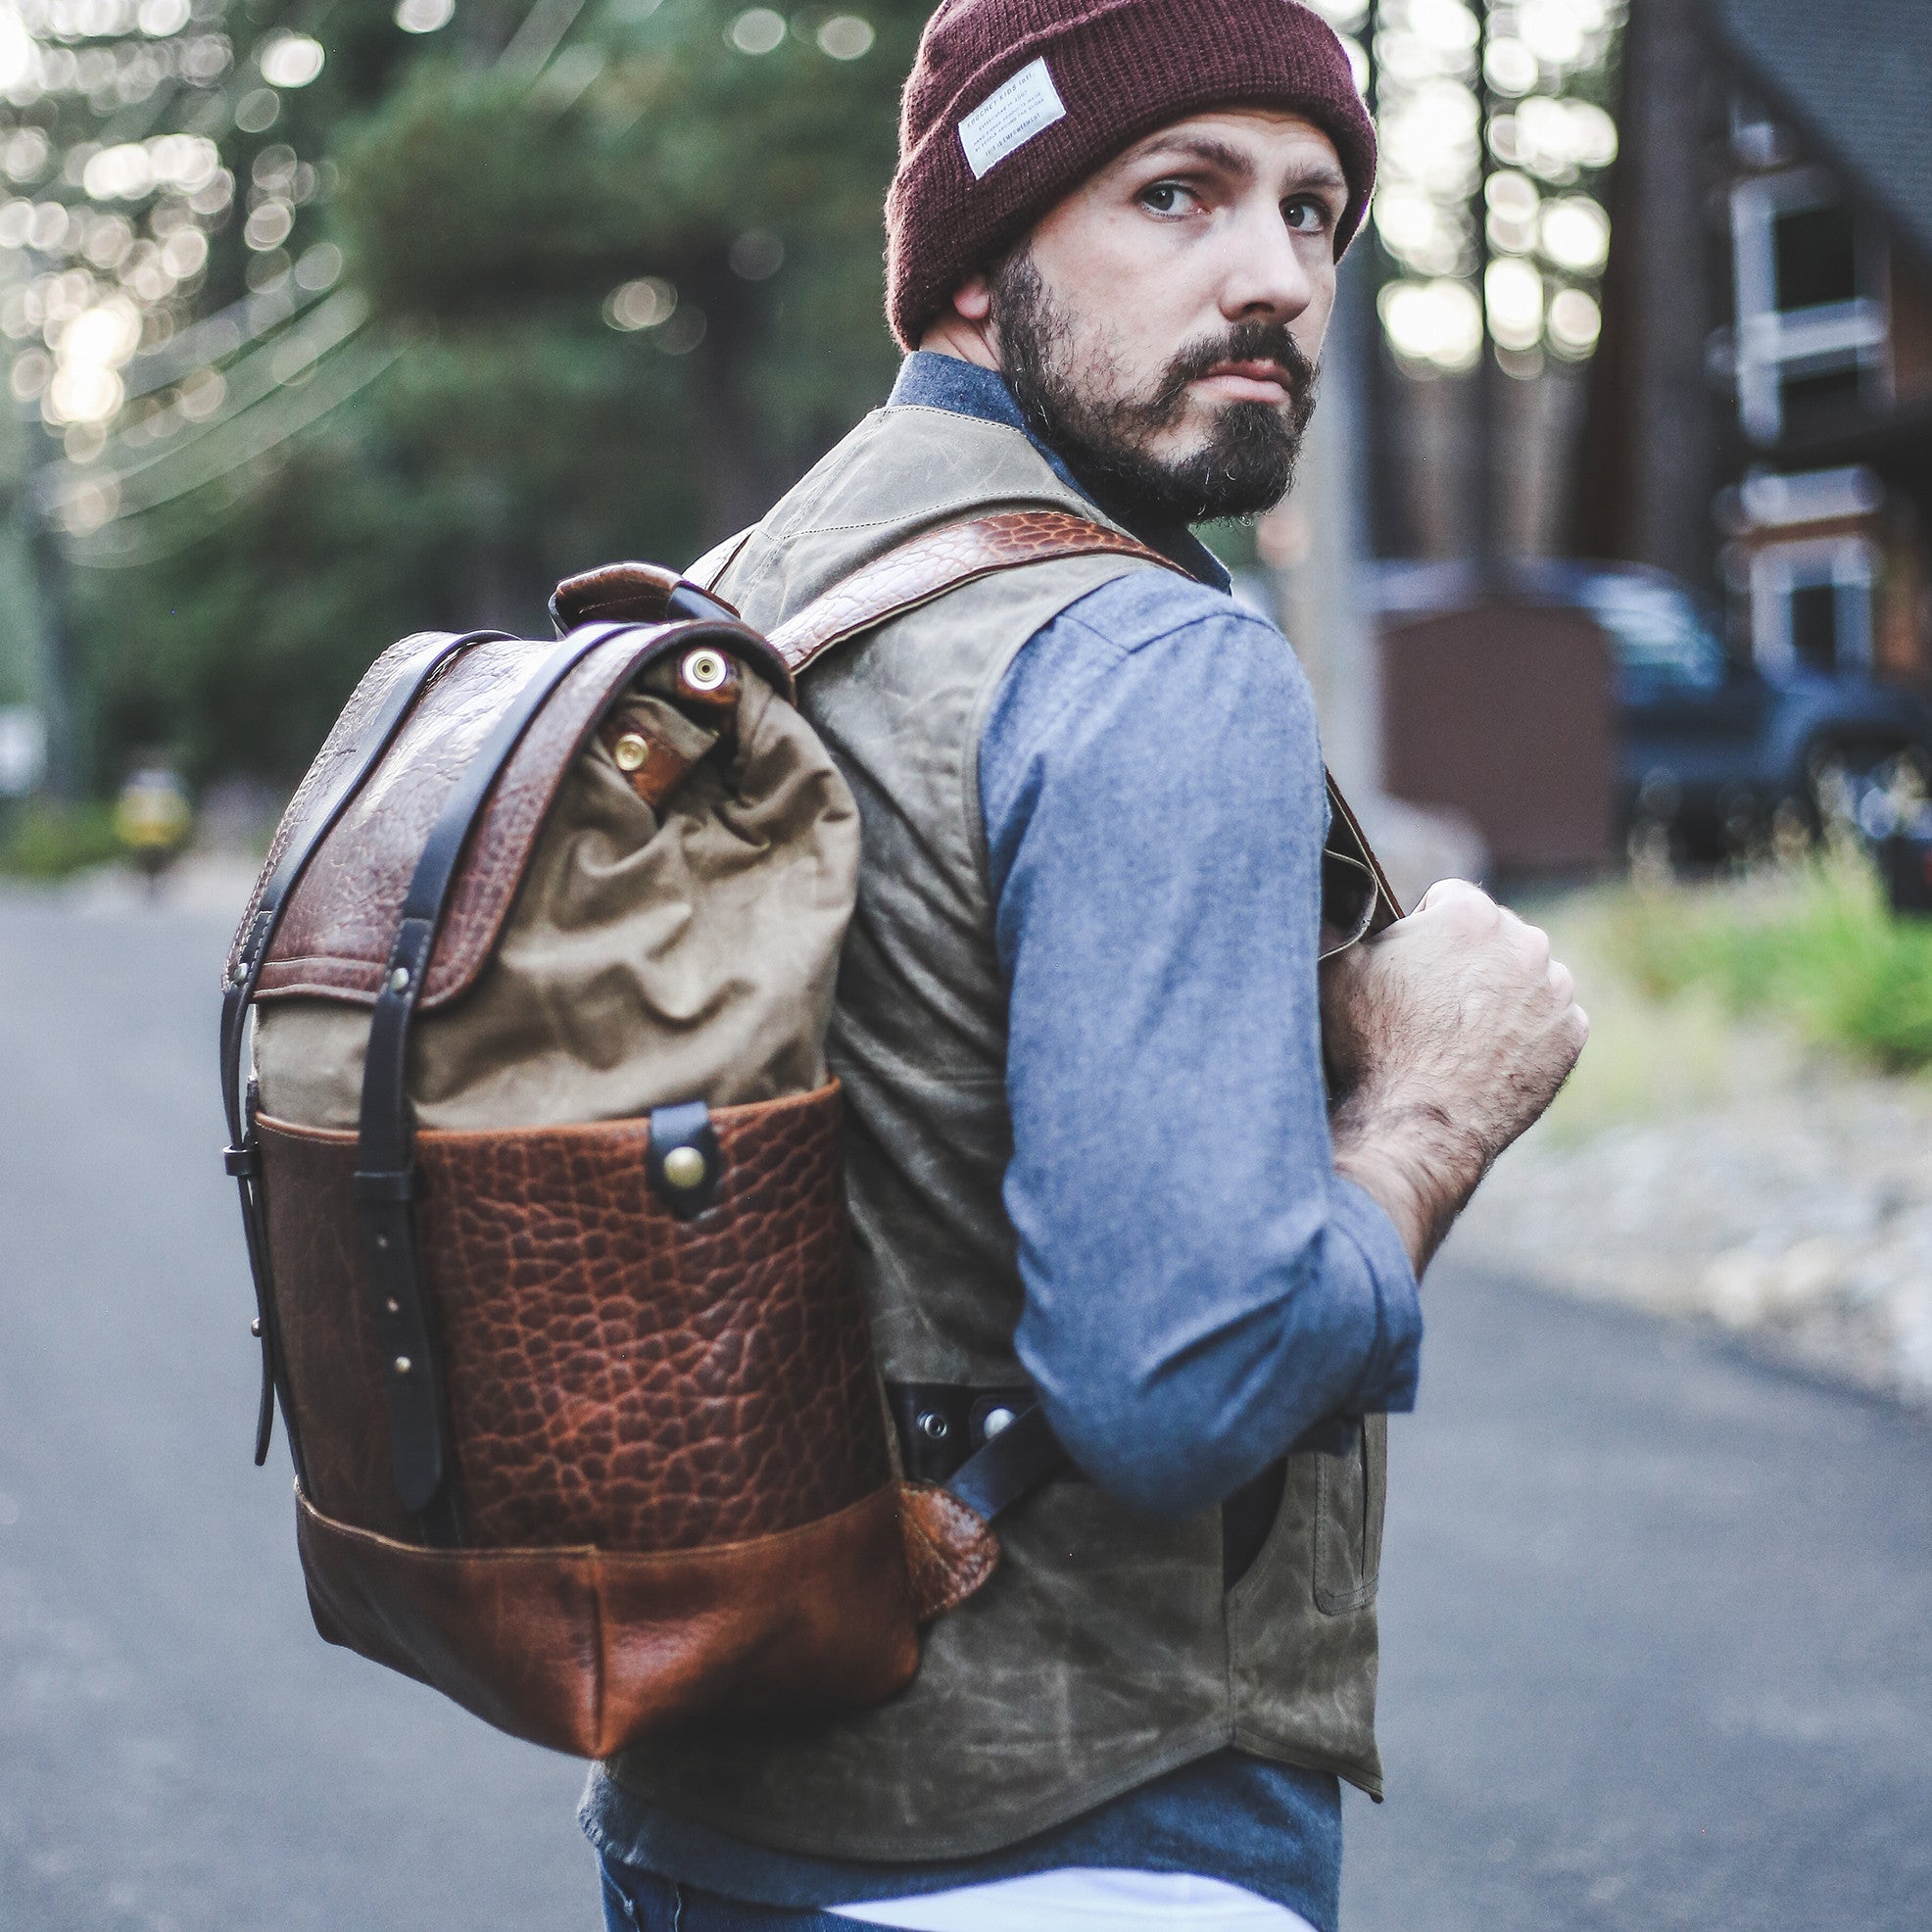 Bison Redwood Backpack #515